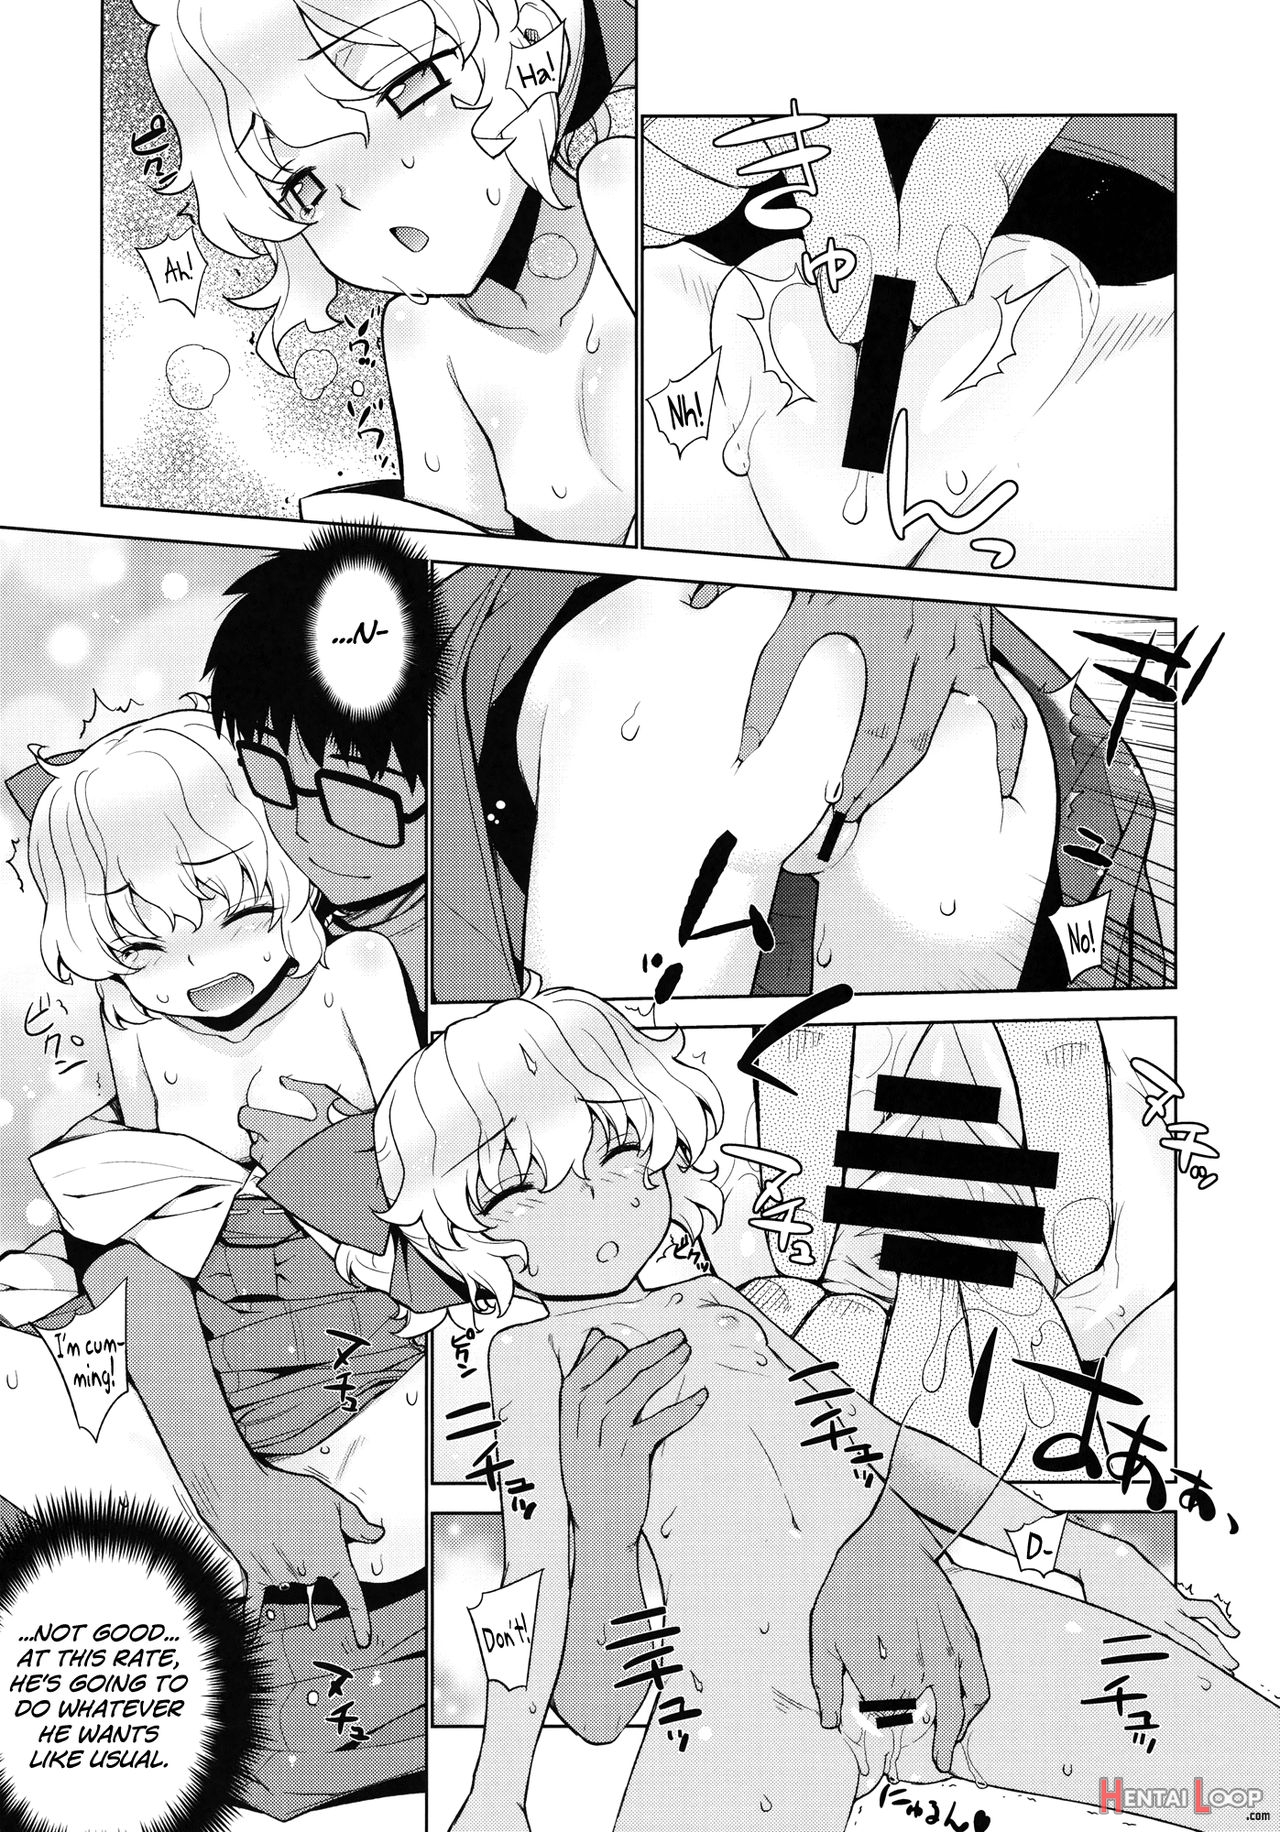 Kanara-sama No Nichijou Nana page 8